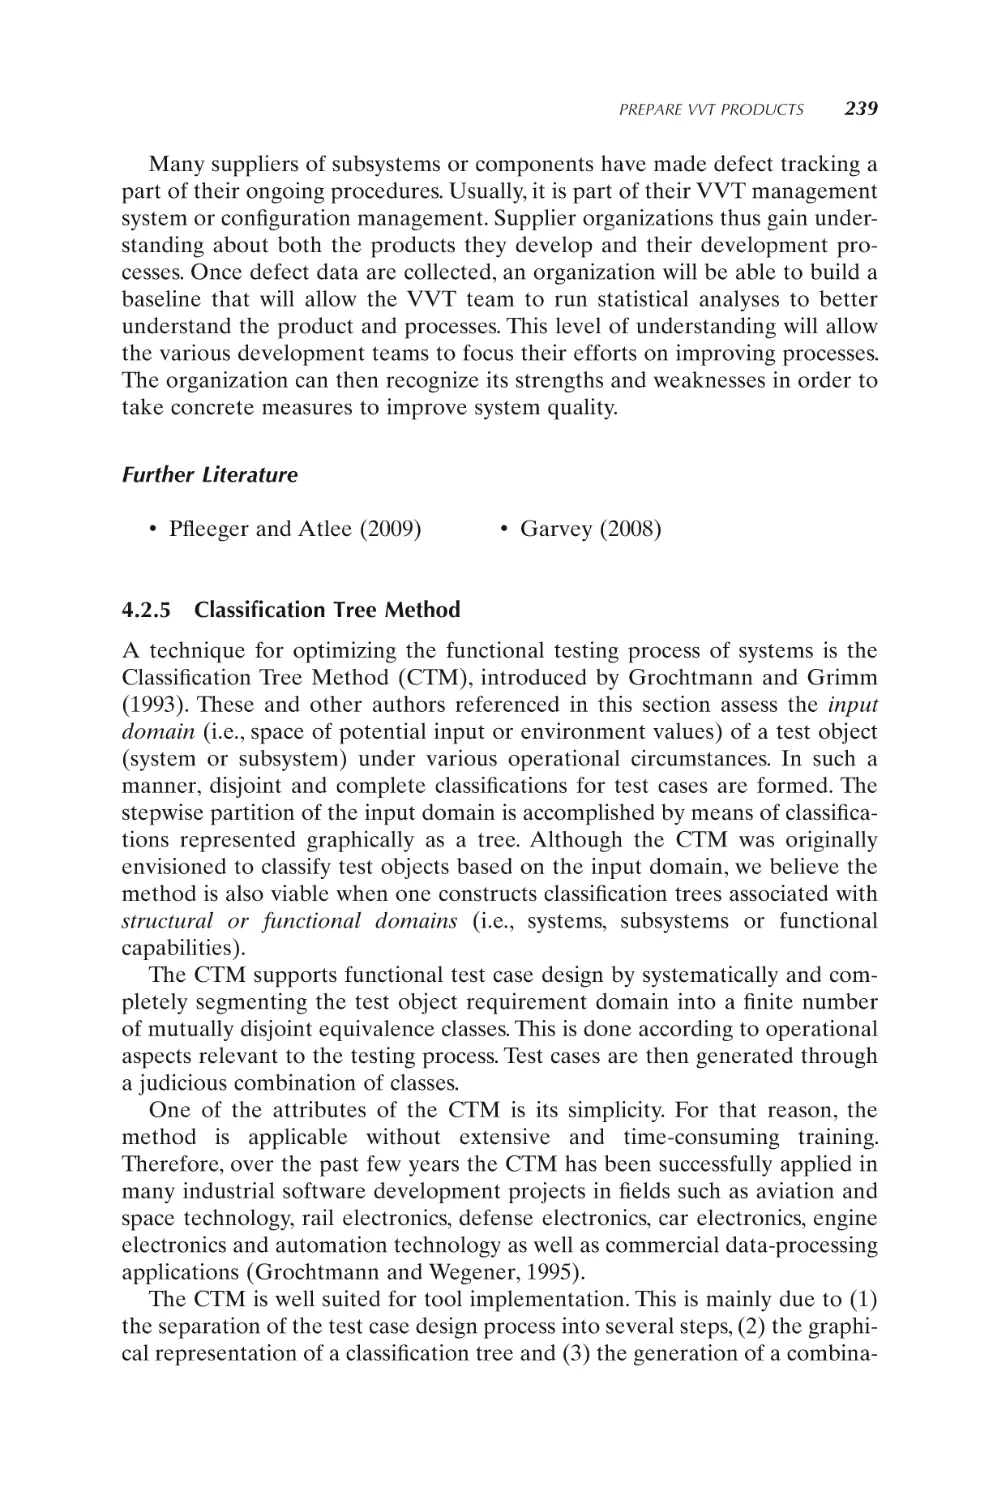 4.2.5 Classification Tree Method